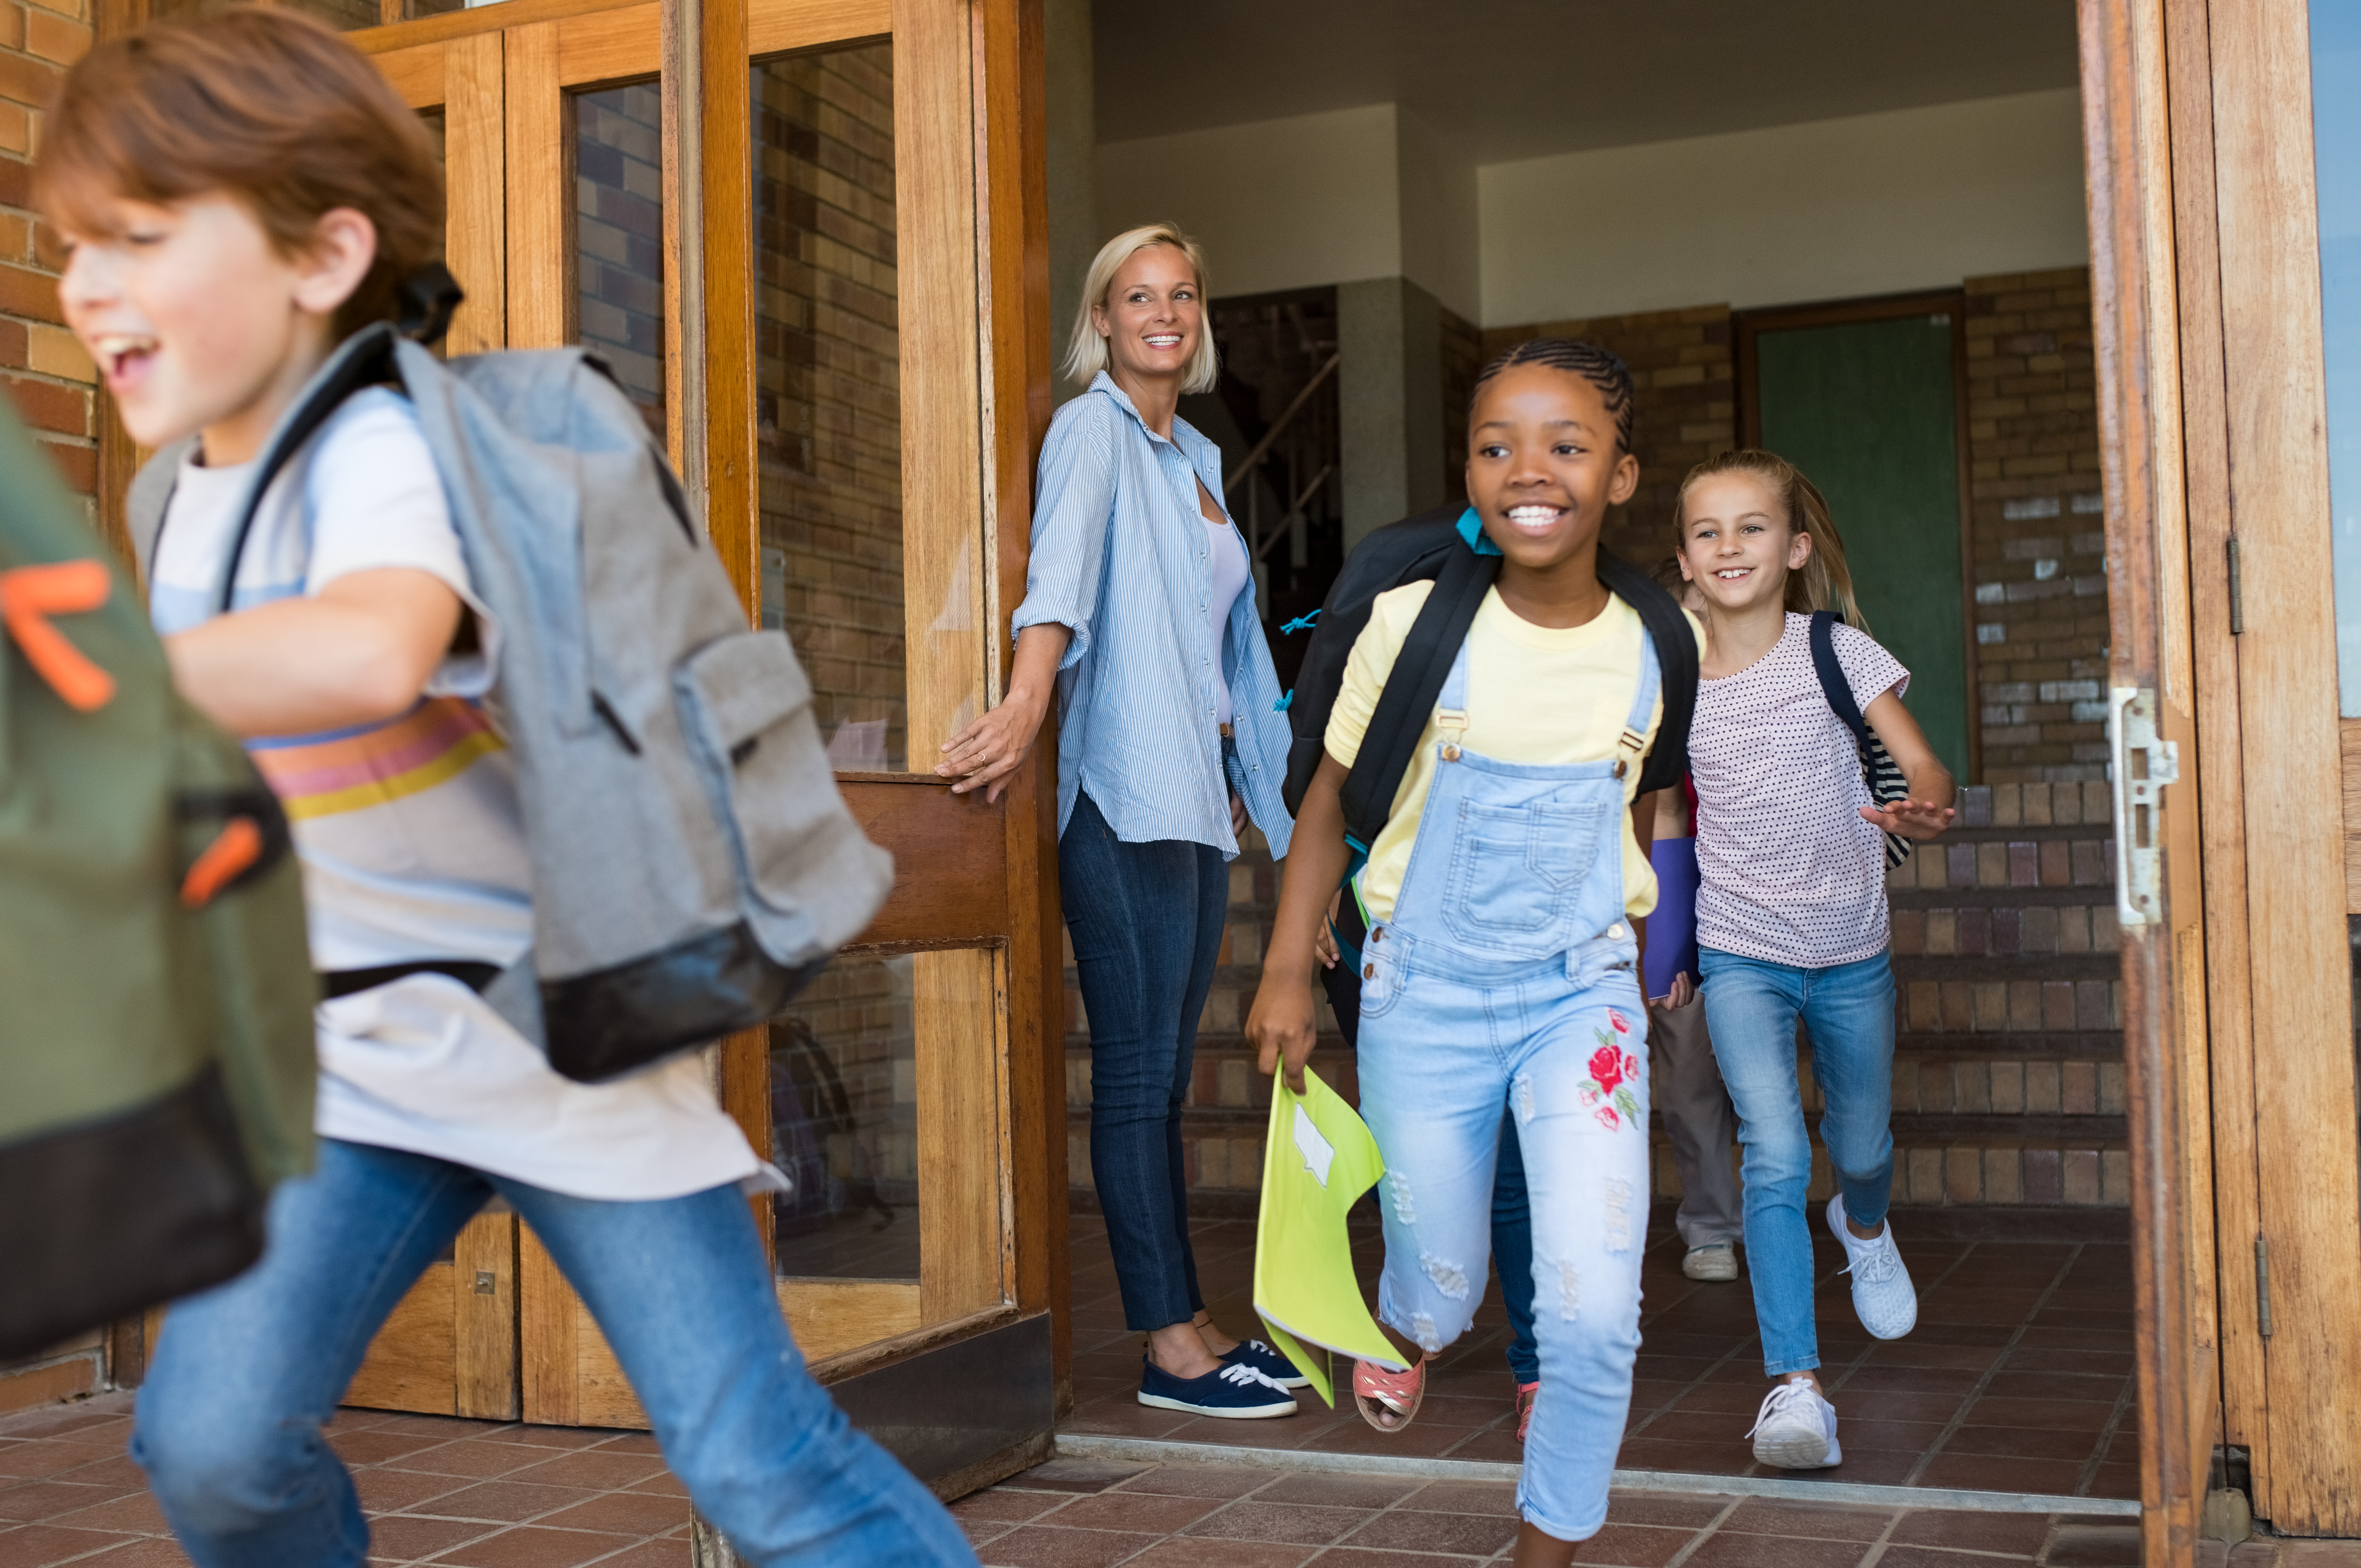 Escolares corriendo al salir de clase | Foto: Shutterstock